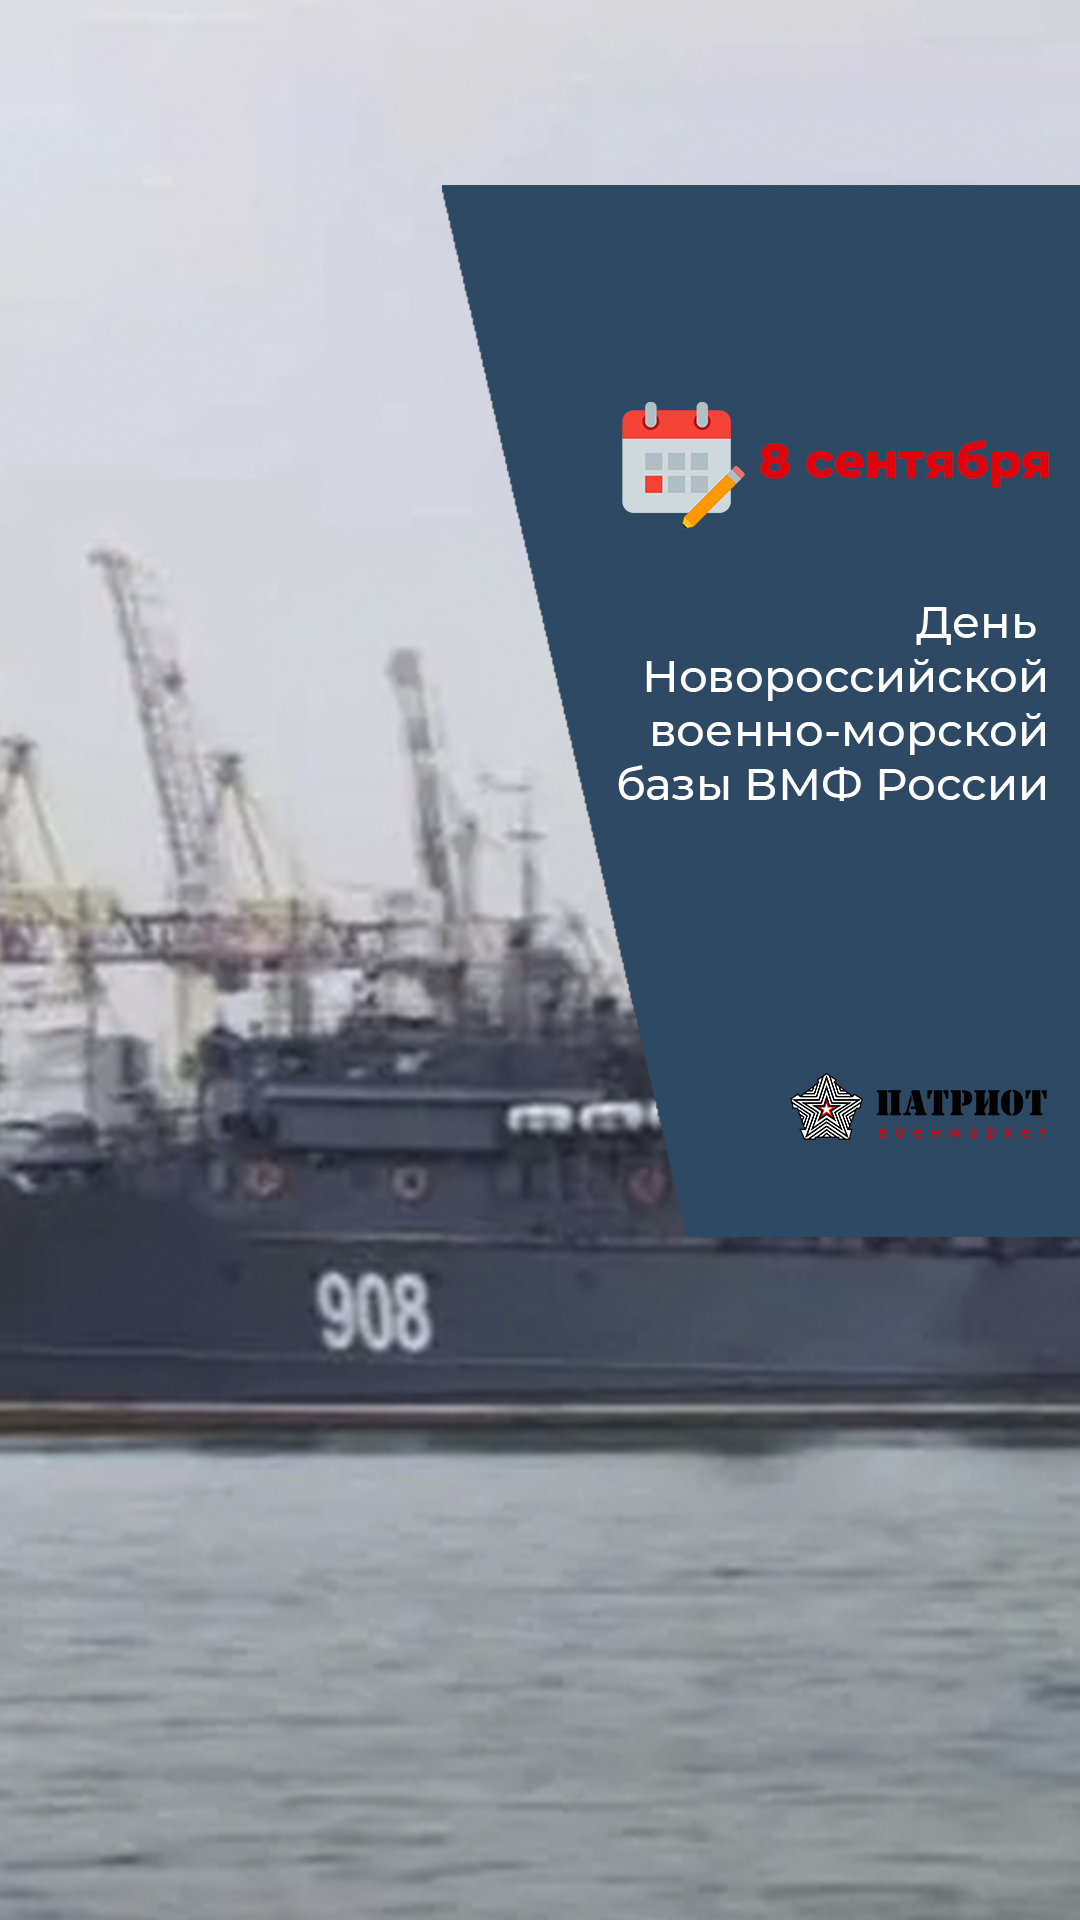 8 Сентября - День Новороссийской военно-морской базы ВМФ России